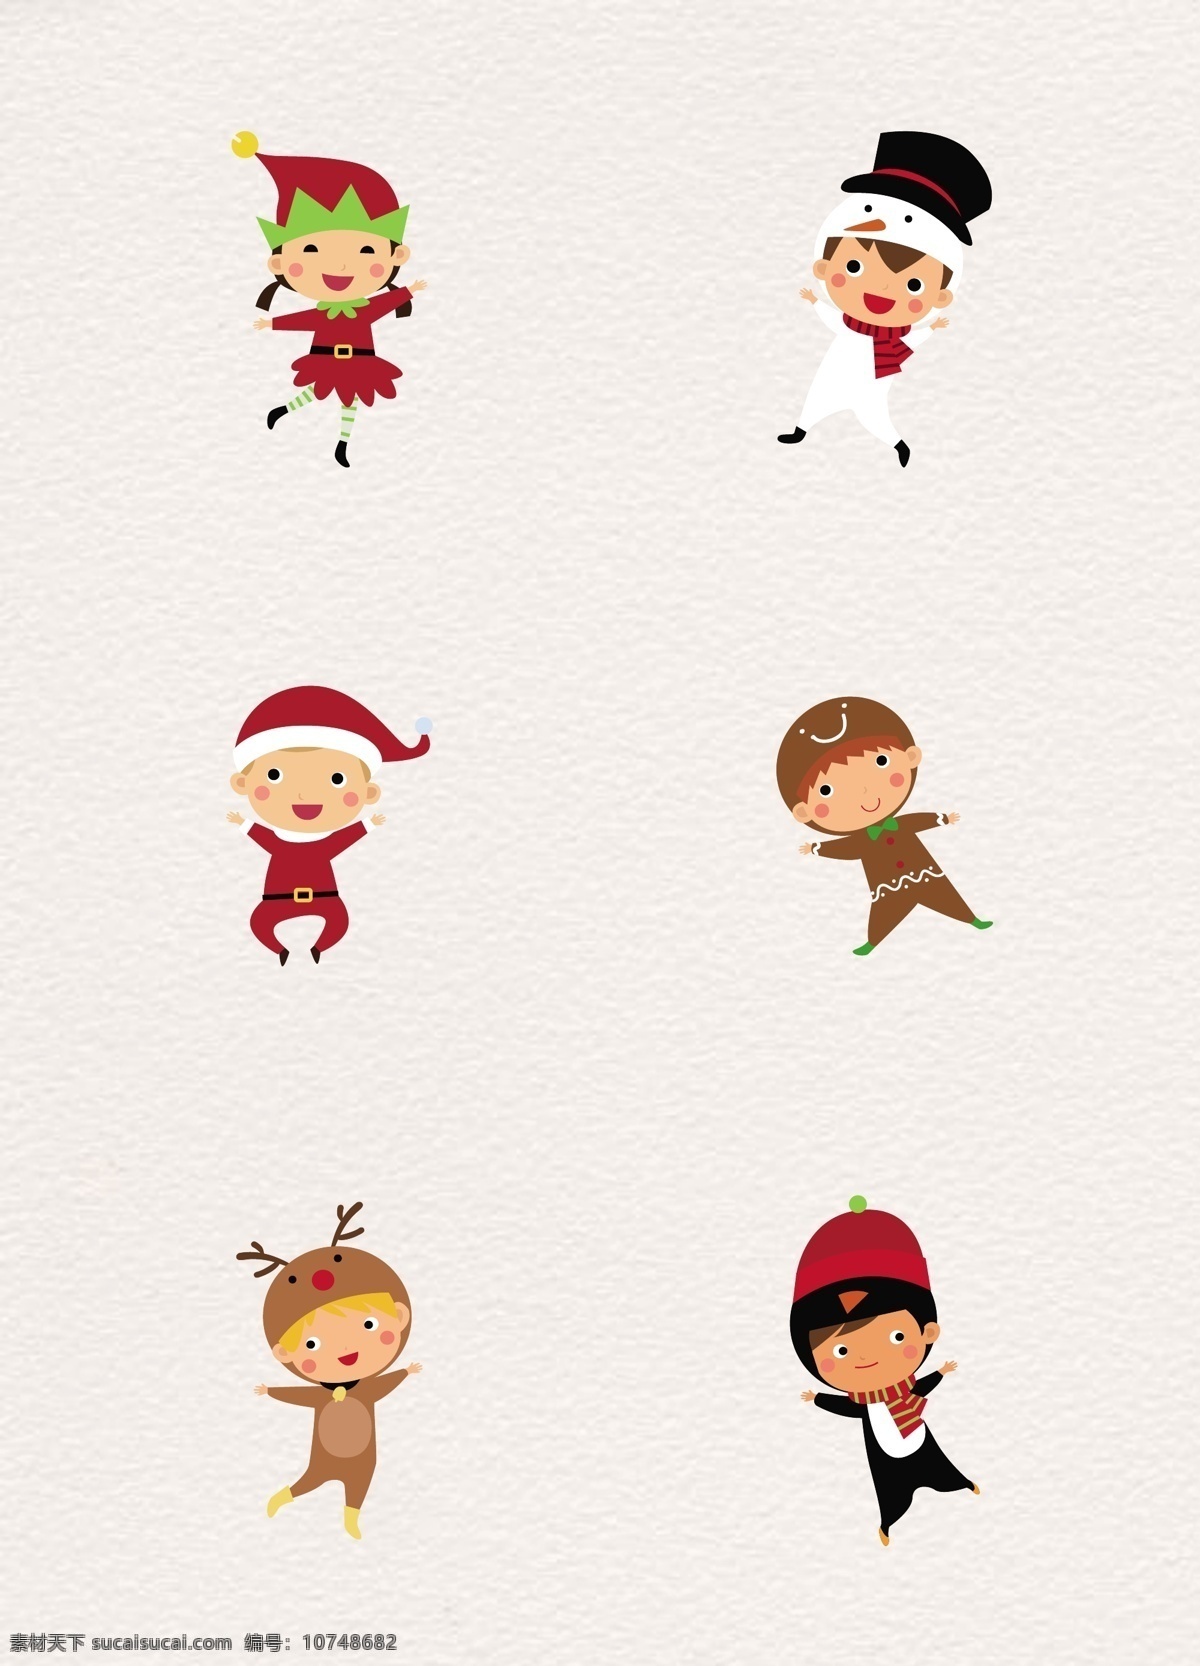 扁平 可爱 圣诞 装扮 儿童 人物 扁平化 矢量图 小孩 卡通 圣诞角色 圣诞装扮 男孩 女孩 雪人 麋鹿 圣诞老人 姜饼人